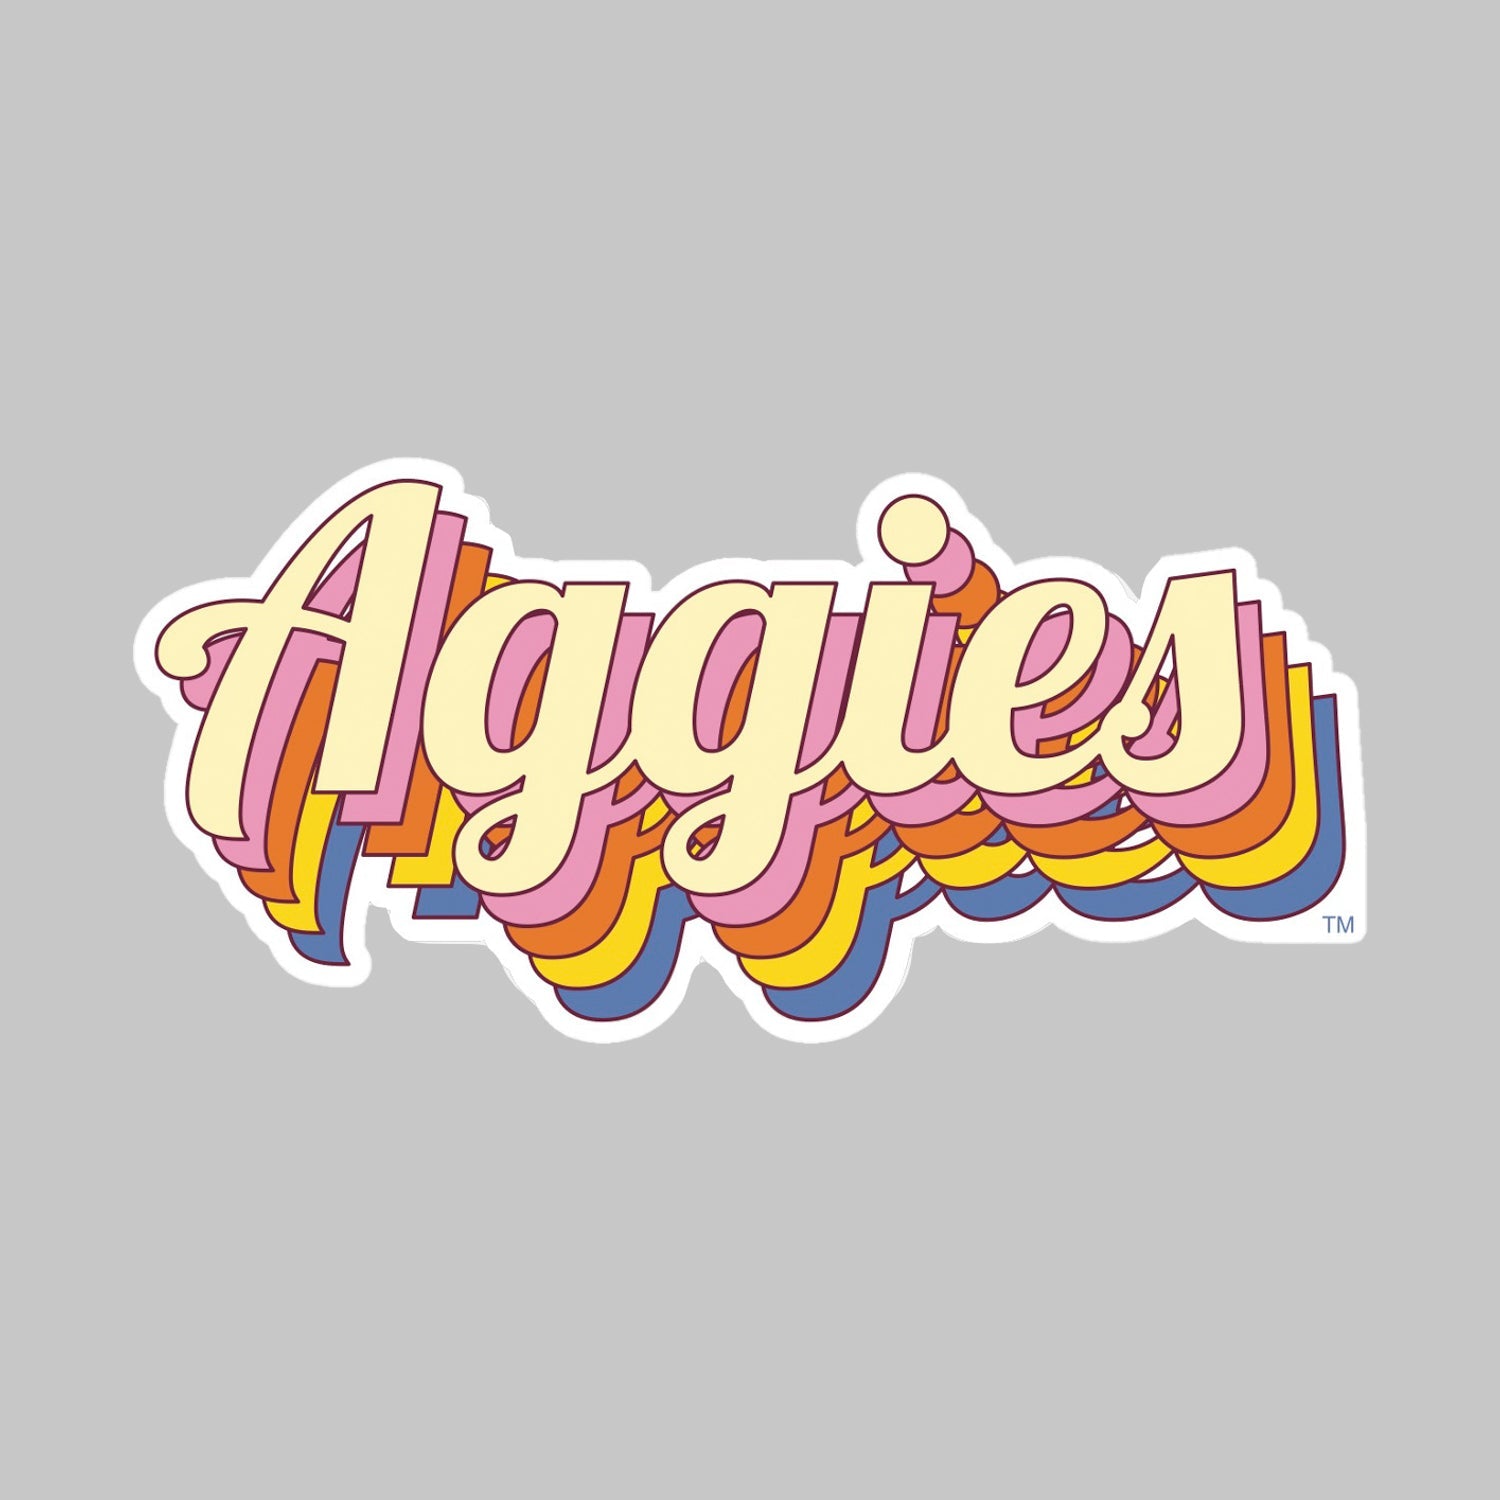 Go Aggies!  Texas a&m, Texas a&m logo, Texas